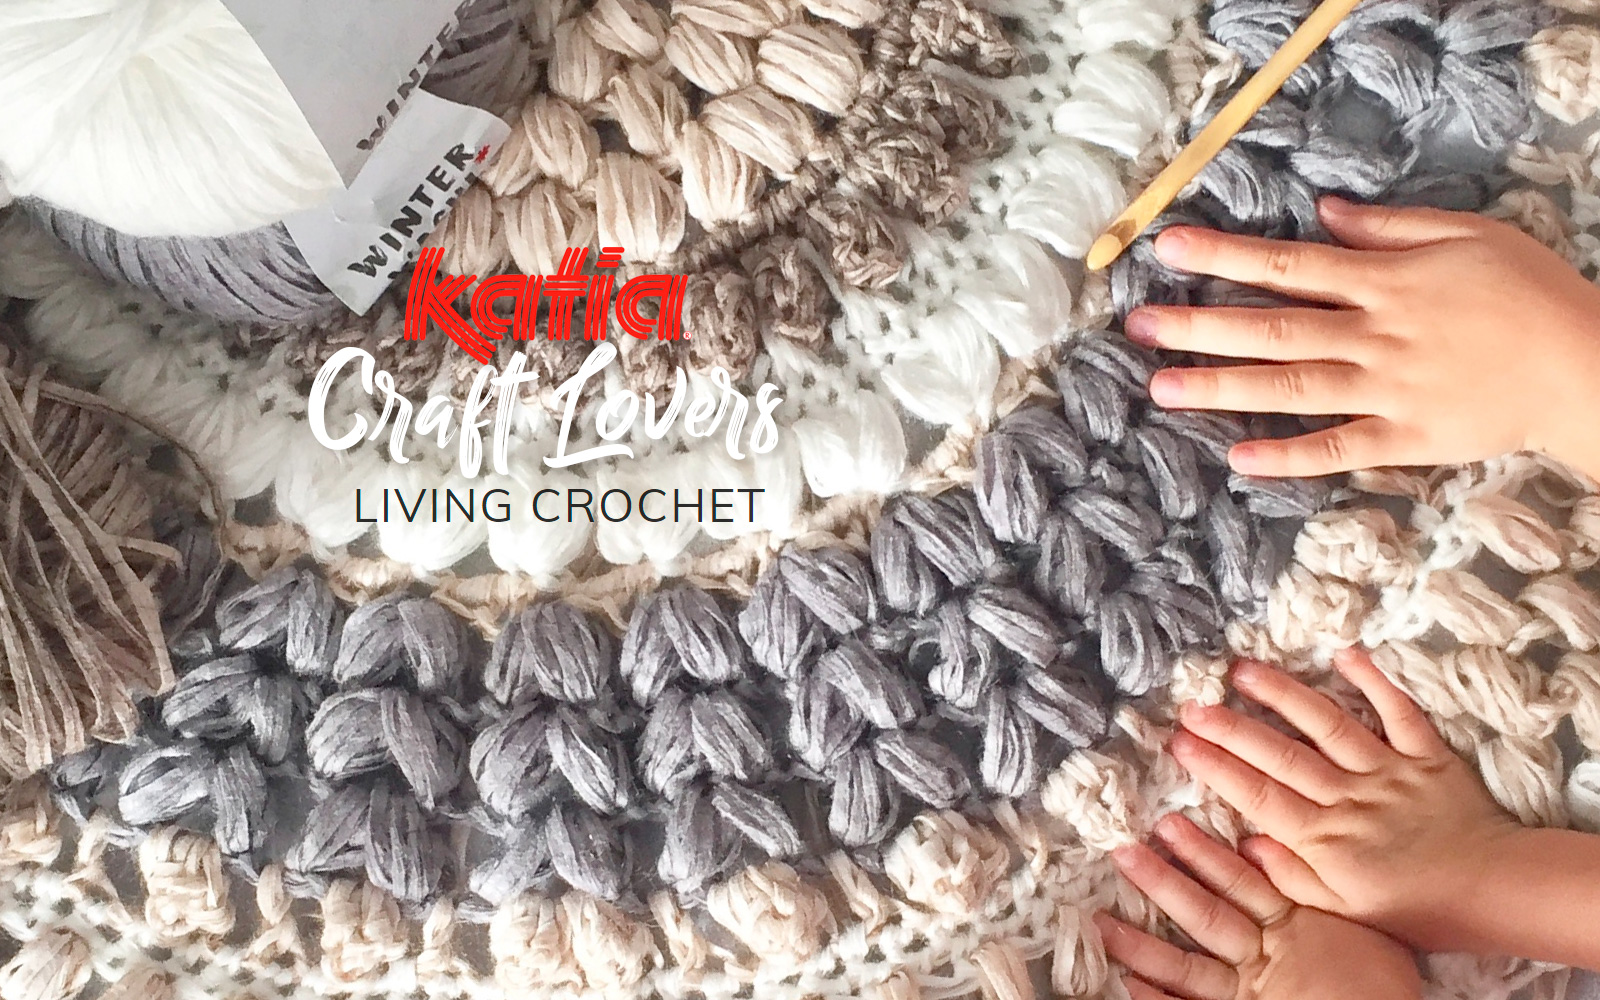 voldoende Neerwaarts Roeispaan Living Crochet leert je hoe je een vloerkleed moet haken met Winter Washi